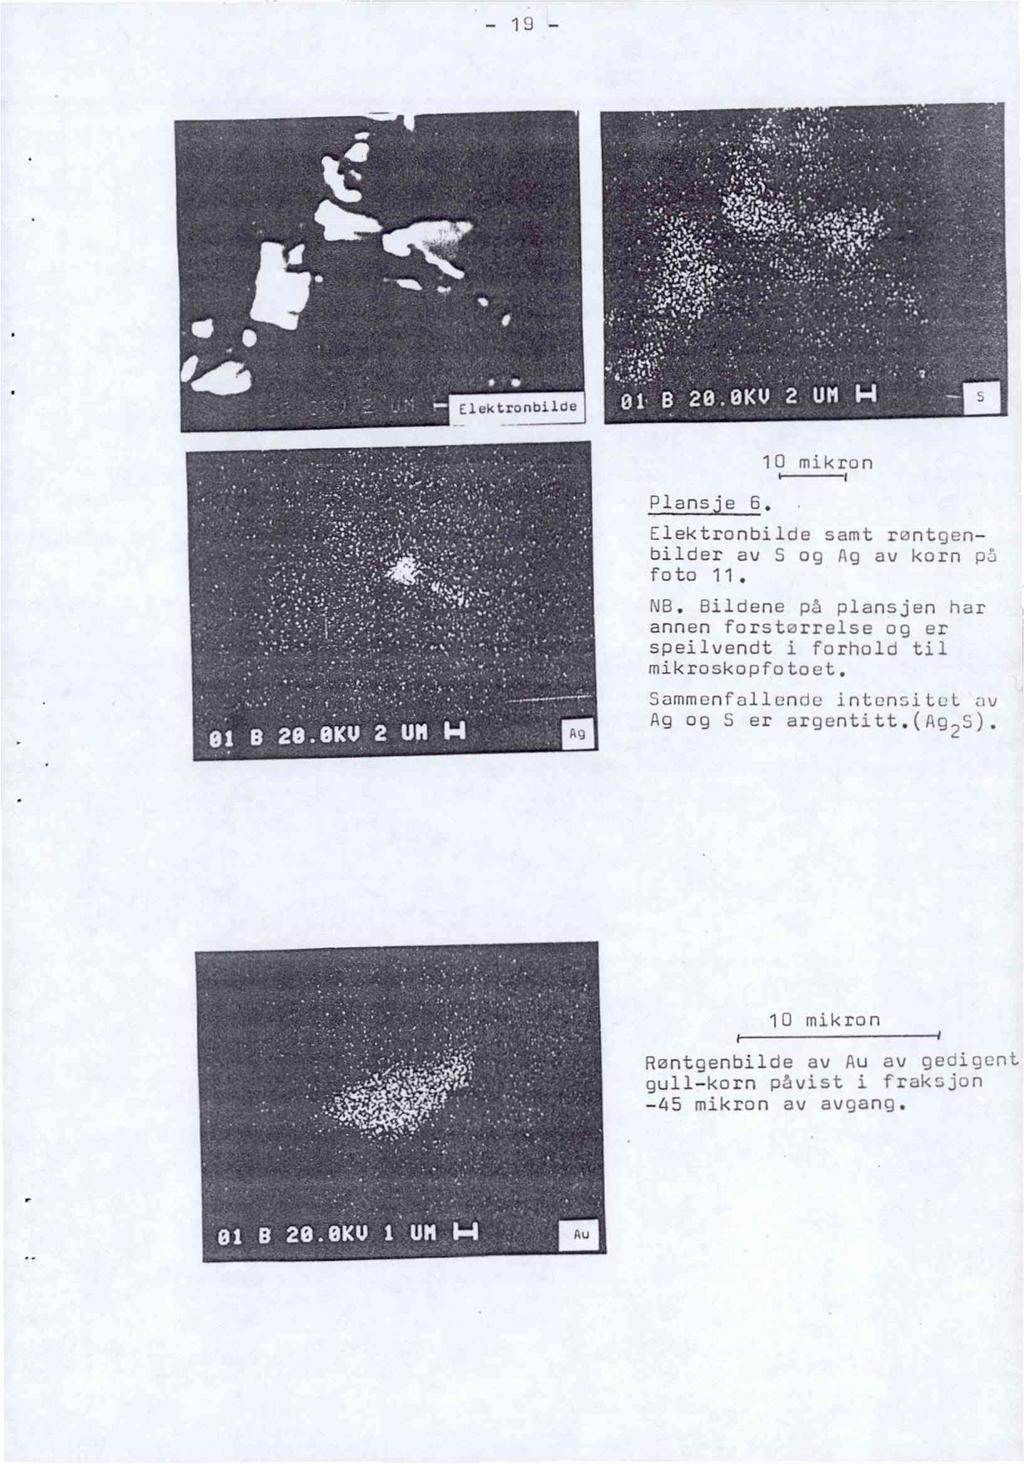 Elektronbilde Plansje 6, 10 mikron Elektronbilde samt rontgenbilder av S og Ag av korn pi foto 11. NB.